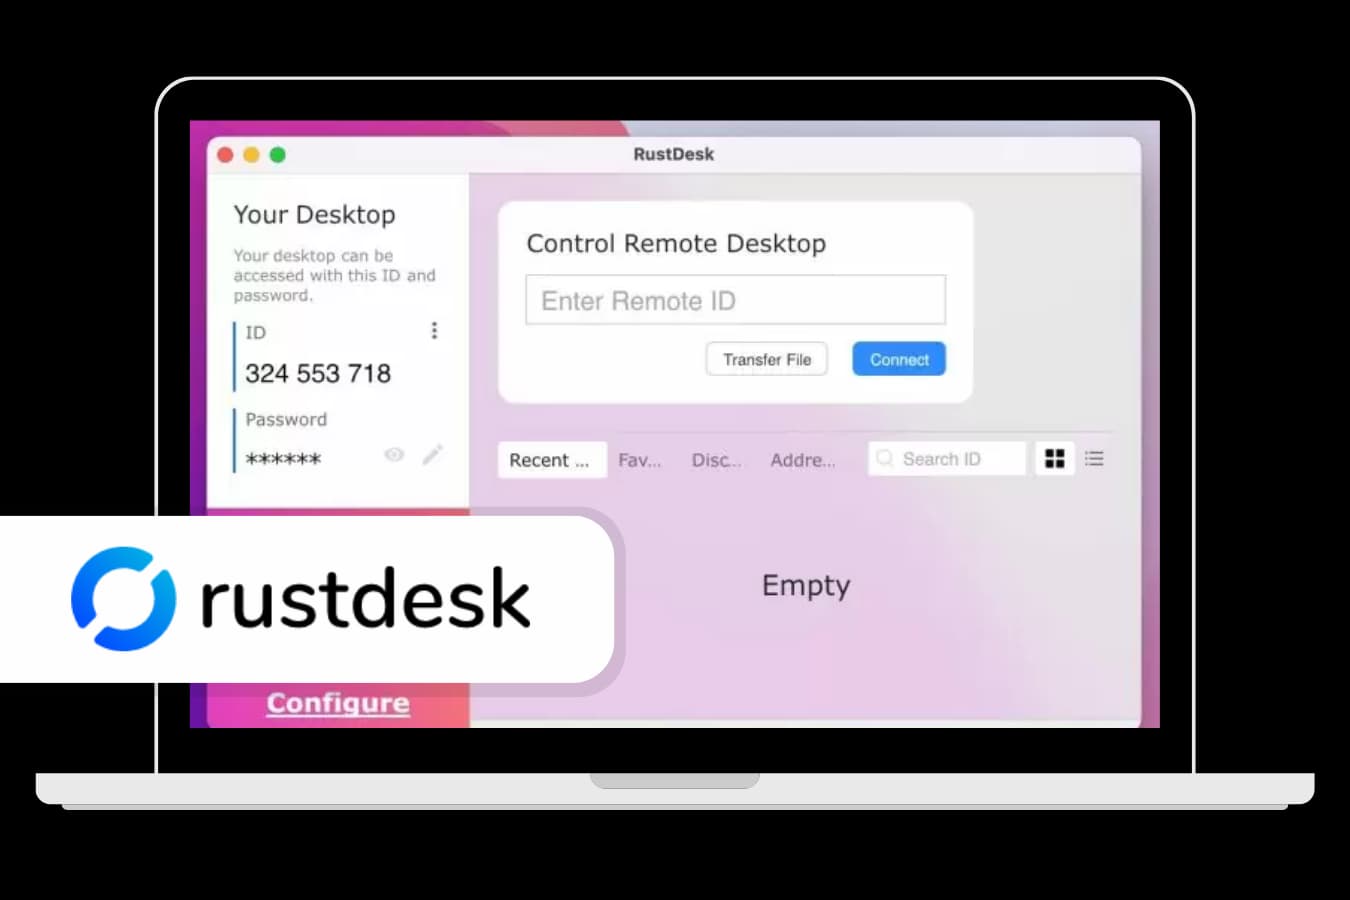 RustDesk interface